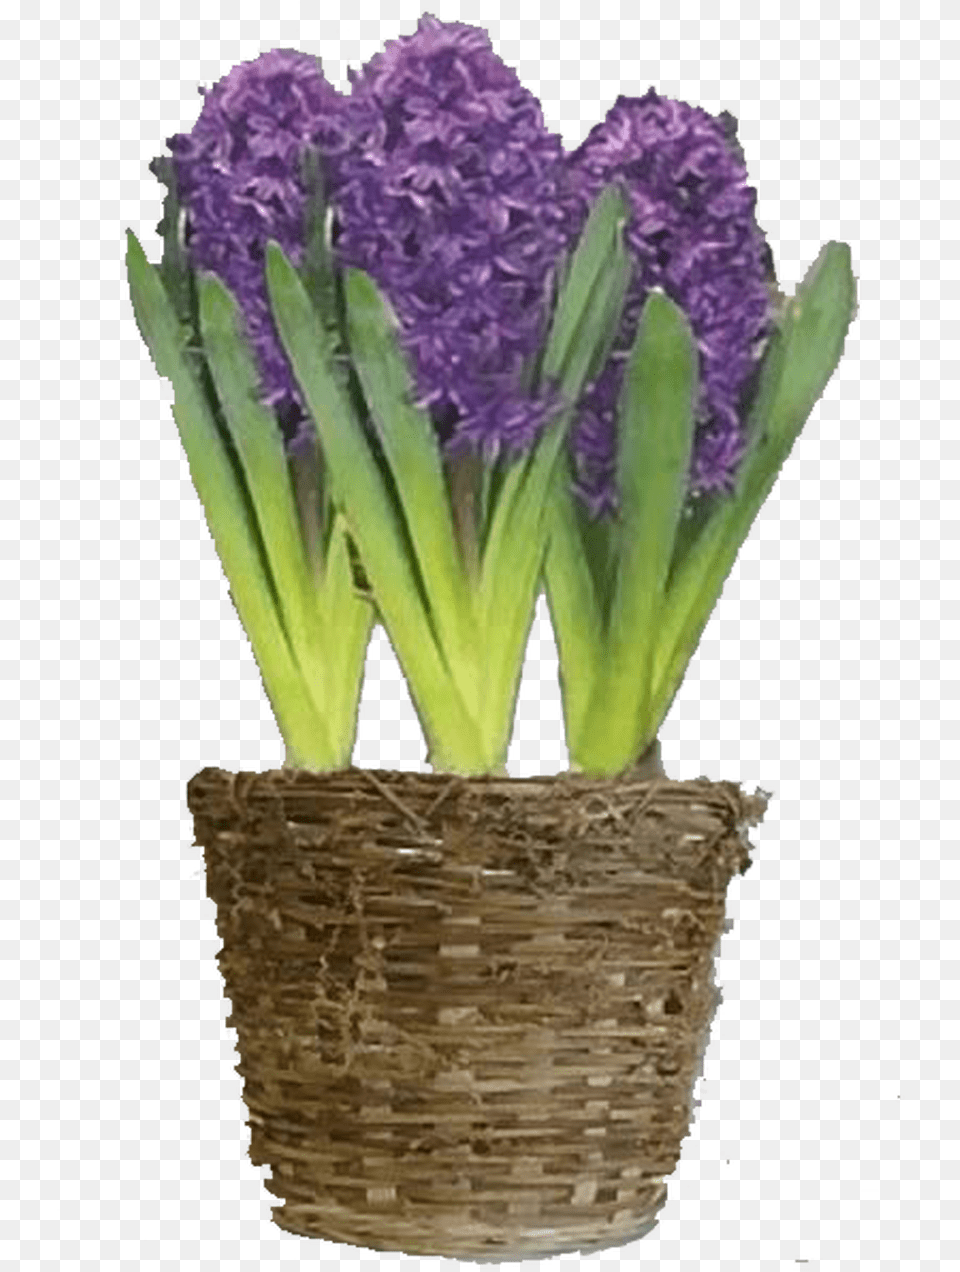 Purple Hyacinth Flower Bulb Gift Basket Hyacinth, Plant, Flower Arrangement, Lavender, Potted Plant Png Image